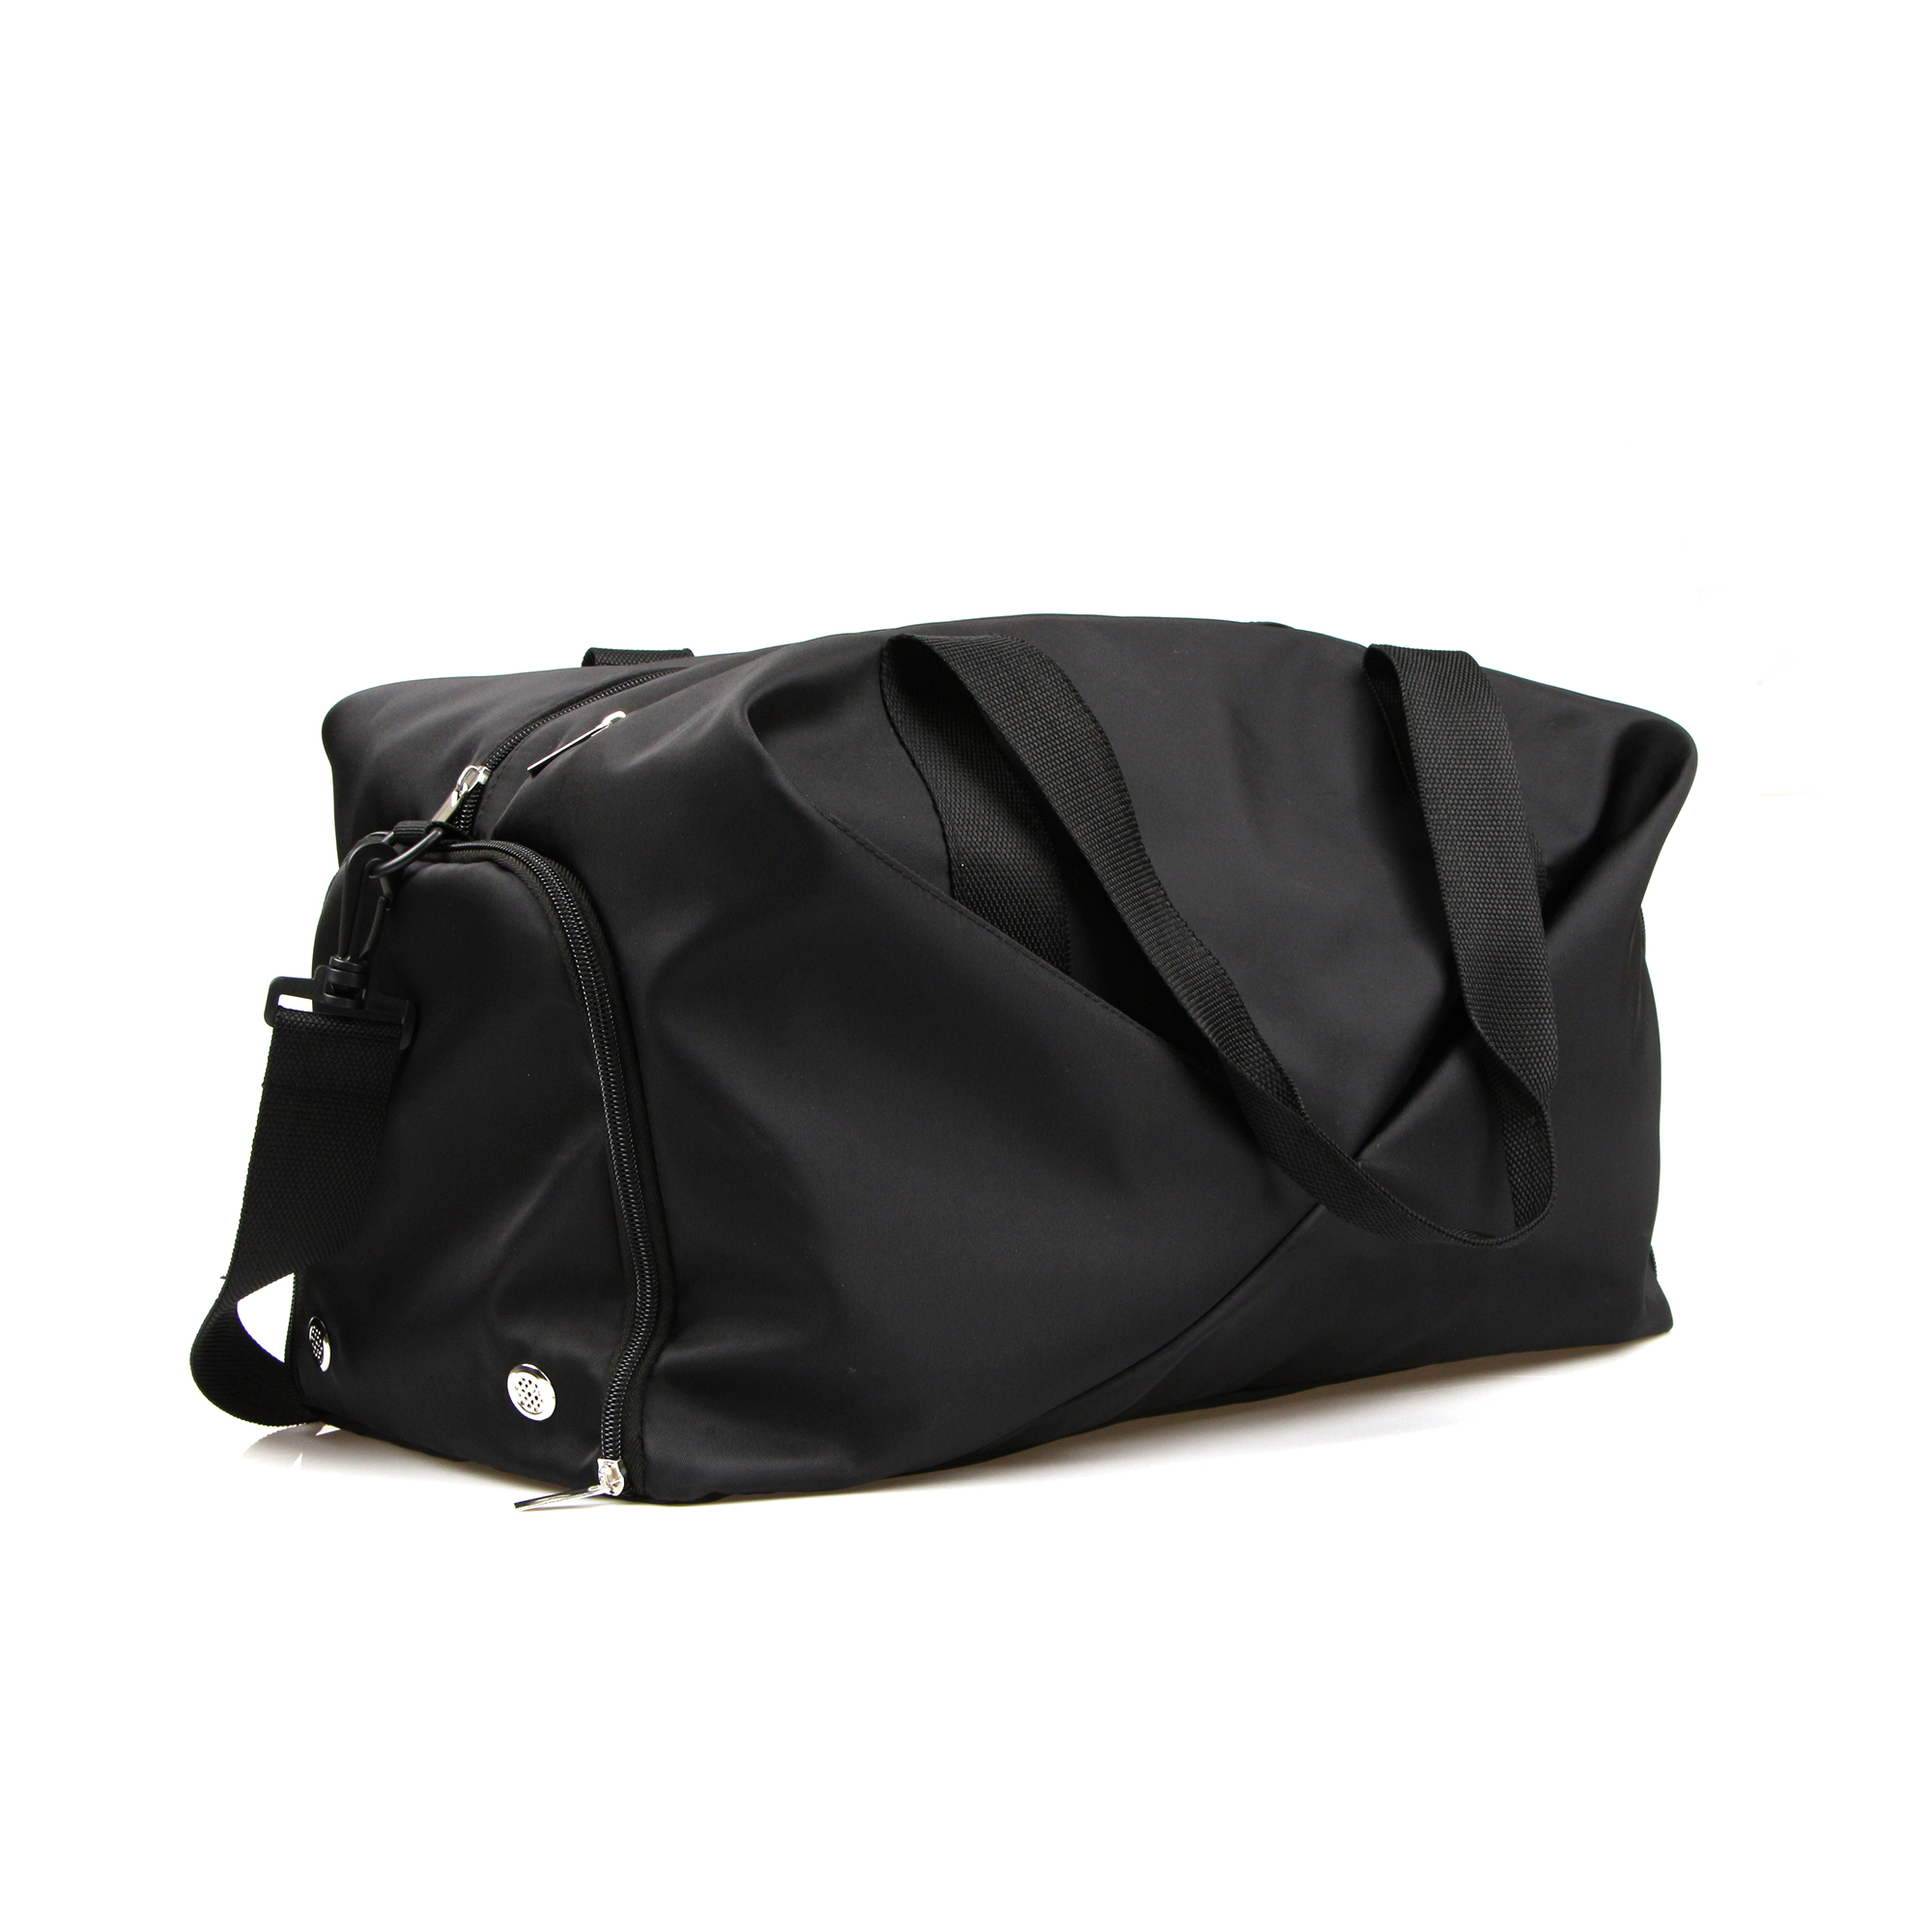 Gym Bag/ Sports Bag/BP-A90070G Gym bag/ Gym Inclined shoulder bag/ Gym handbag